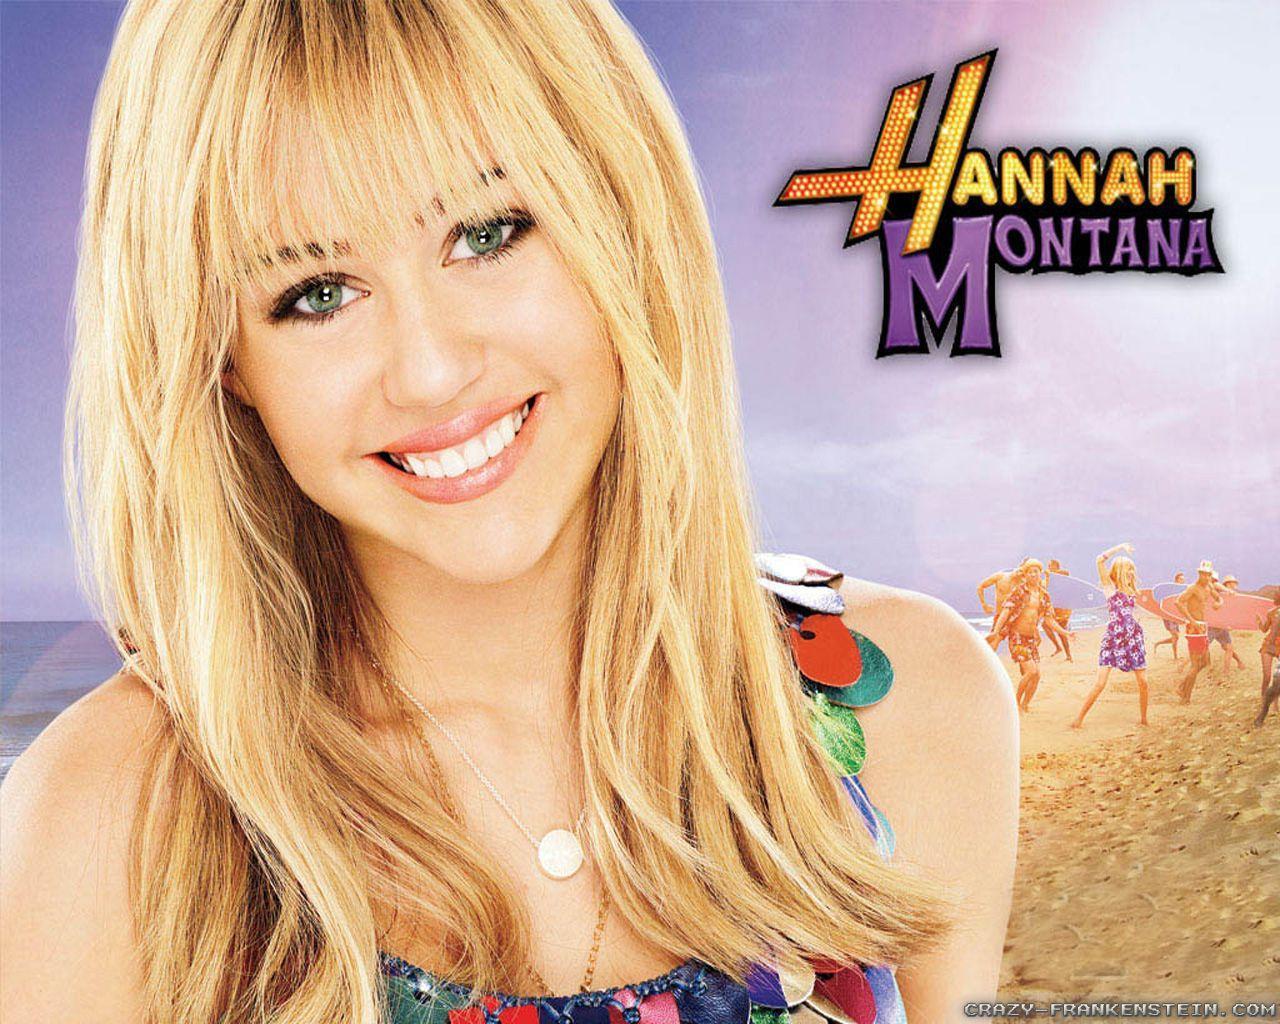 Hannah Montana Wallpaper Desktop